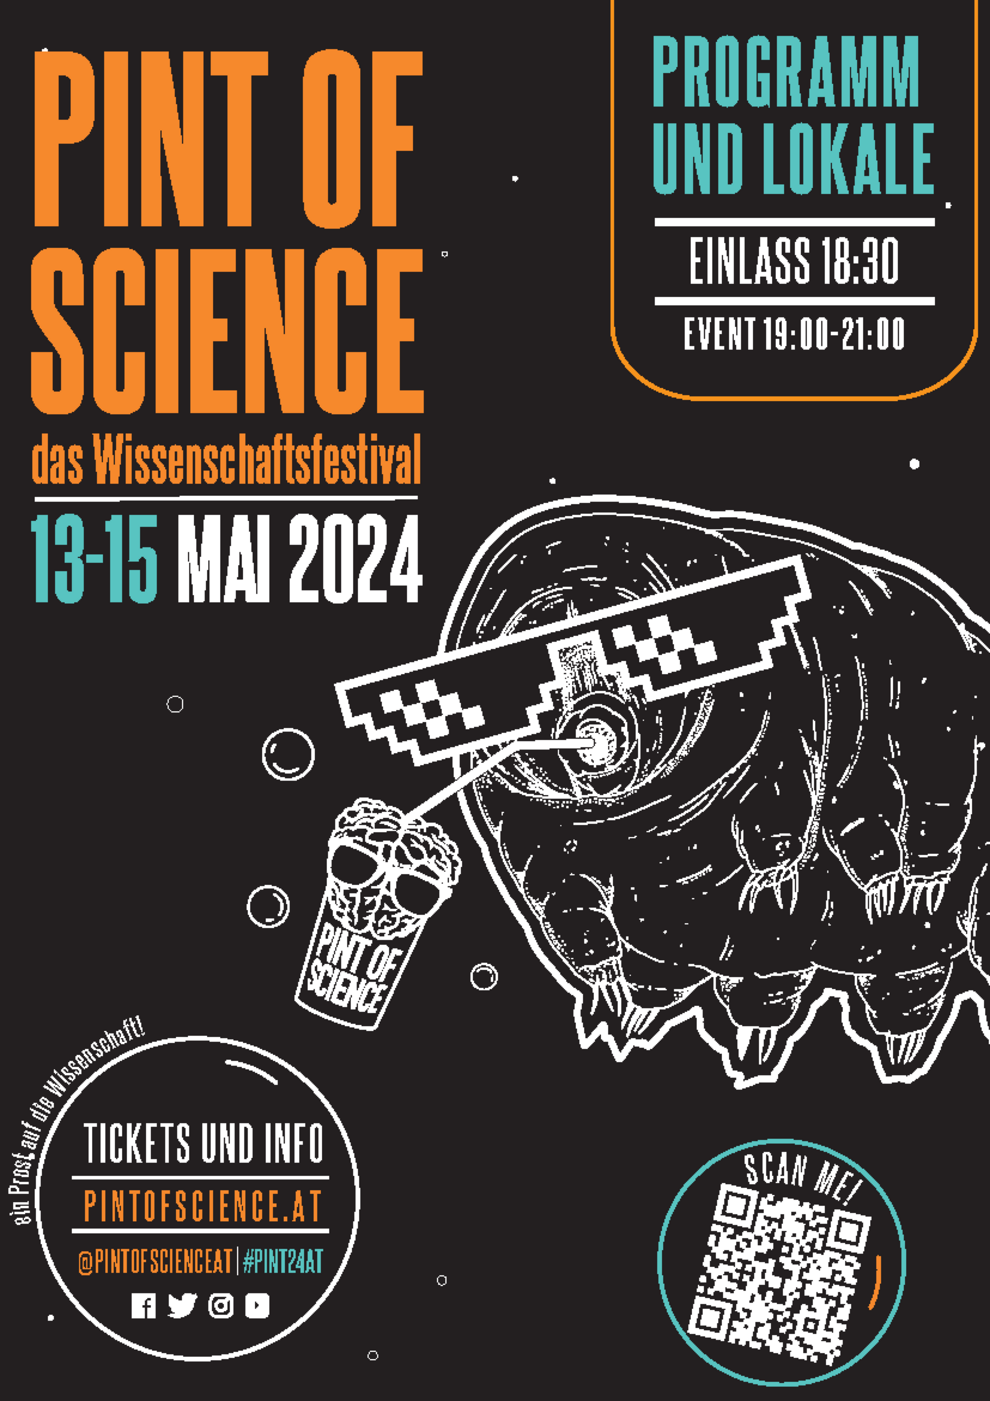 Barrierefreiheit) Pint of Science das Wissenschaftsfestival: 13-15 Mai 2024 Tickets und Info unter pintofscience.at  